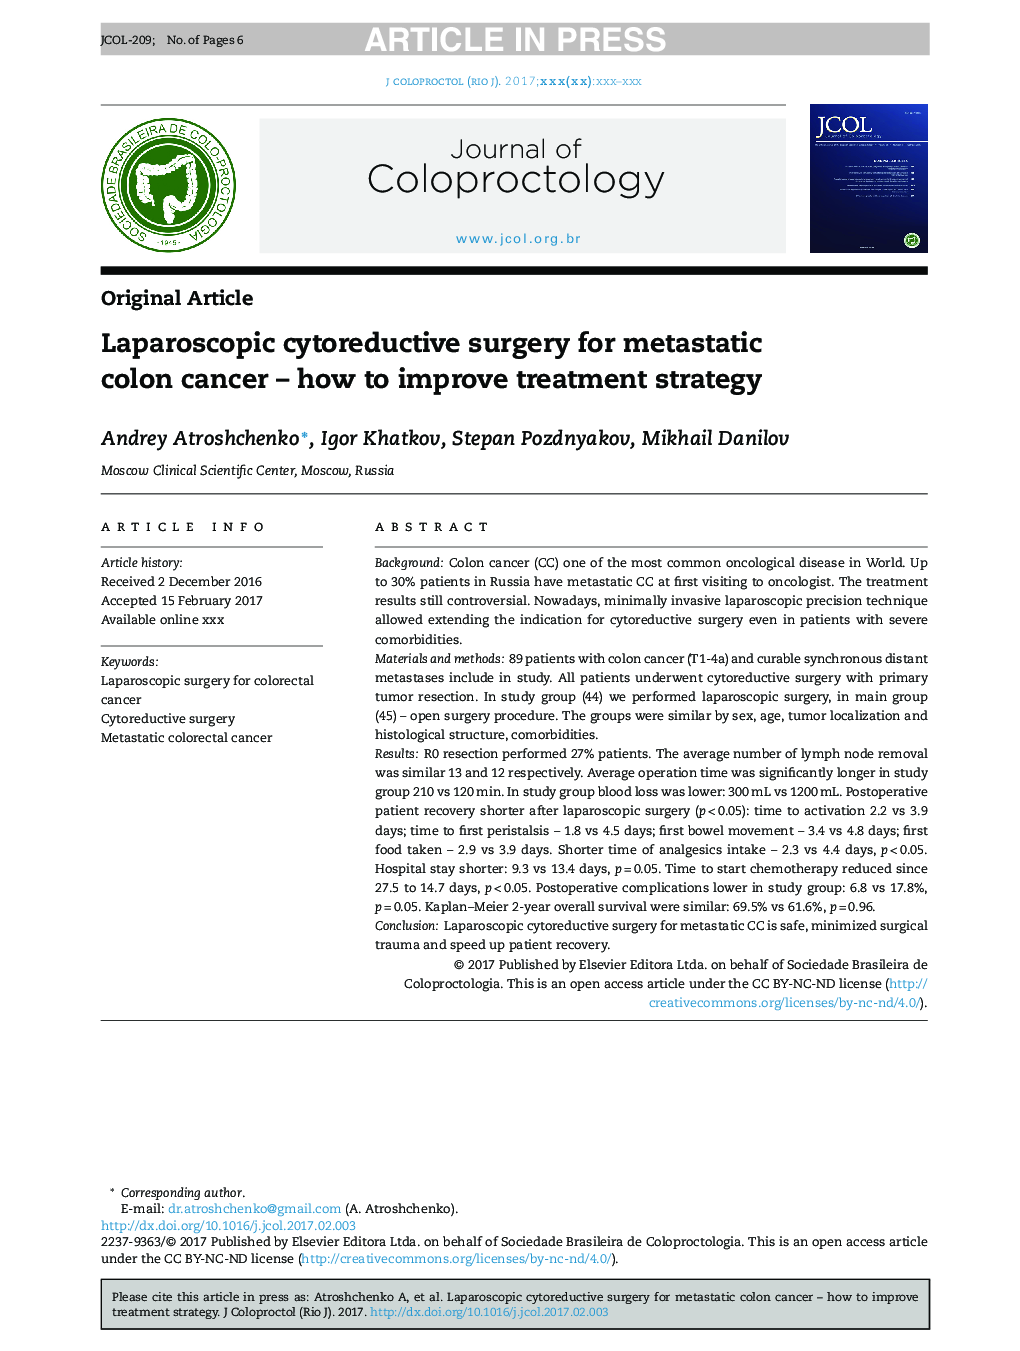 جراحی لاپاروسکوپی جراحی برای سرطان متاستاتیک کولون - چگونگی بهبود استراتژی درمان 